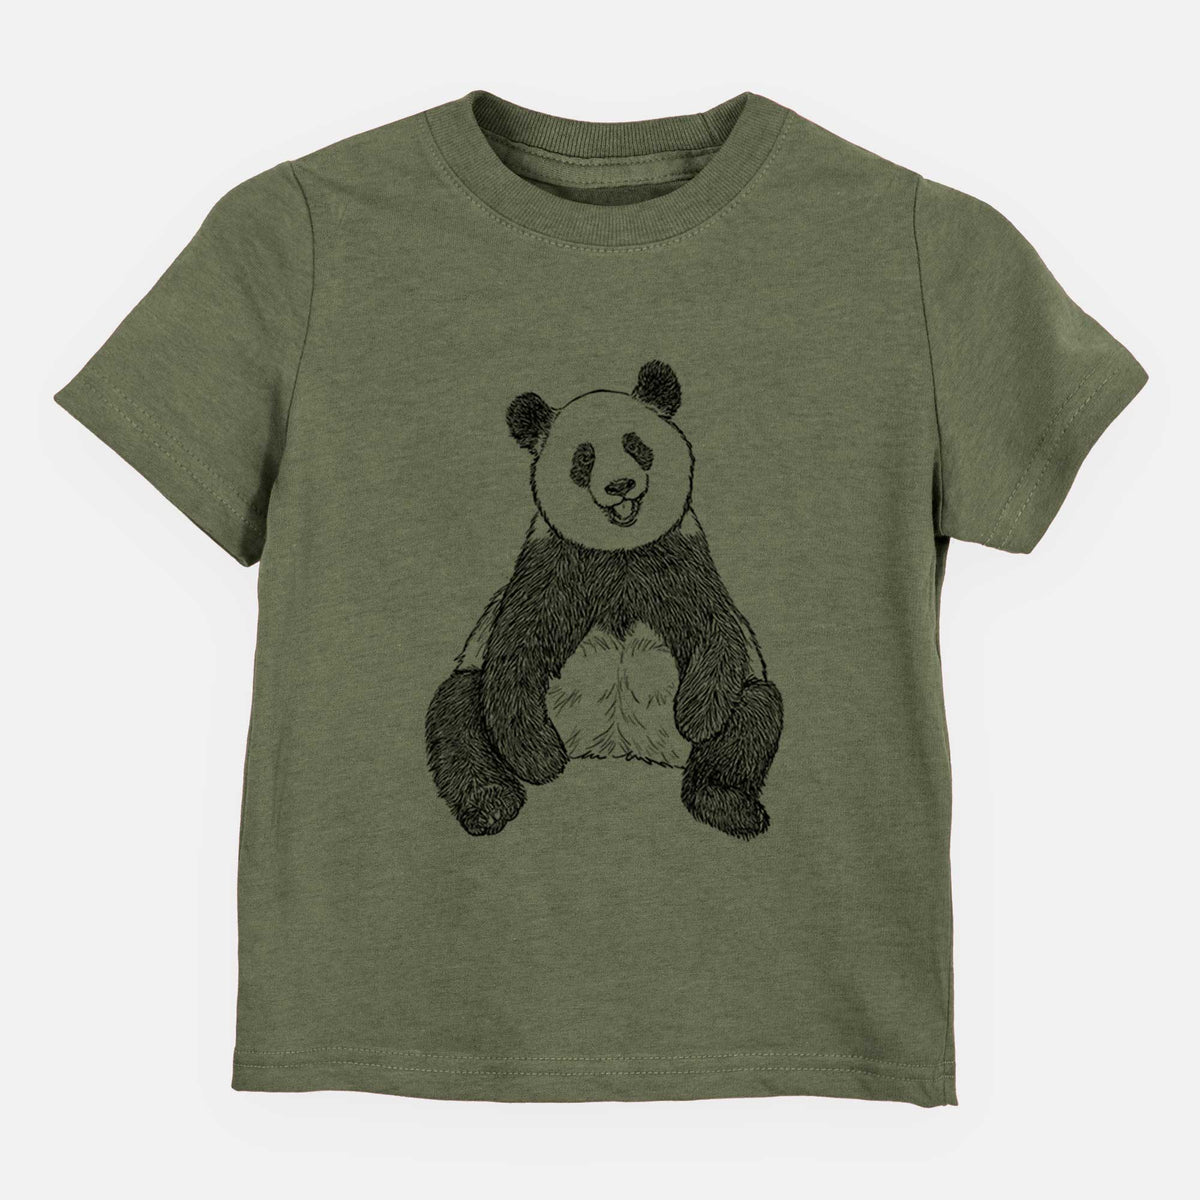 Ailuropoda melanoleuca - Giant Panda Sitting - Kids Shirt